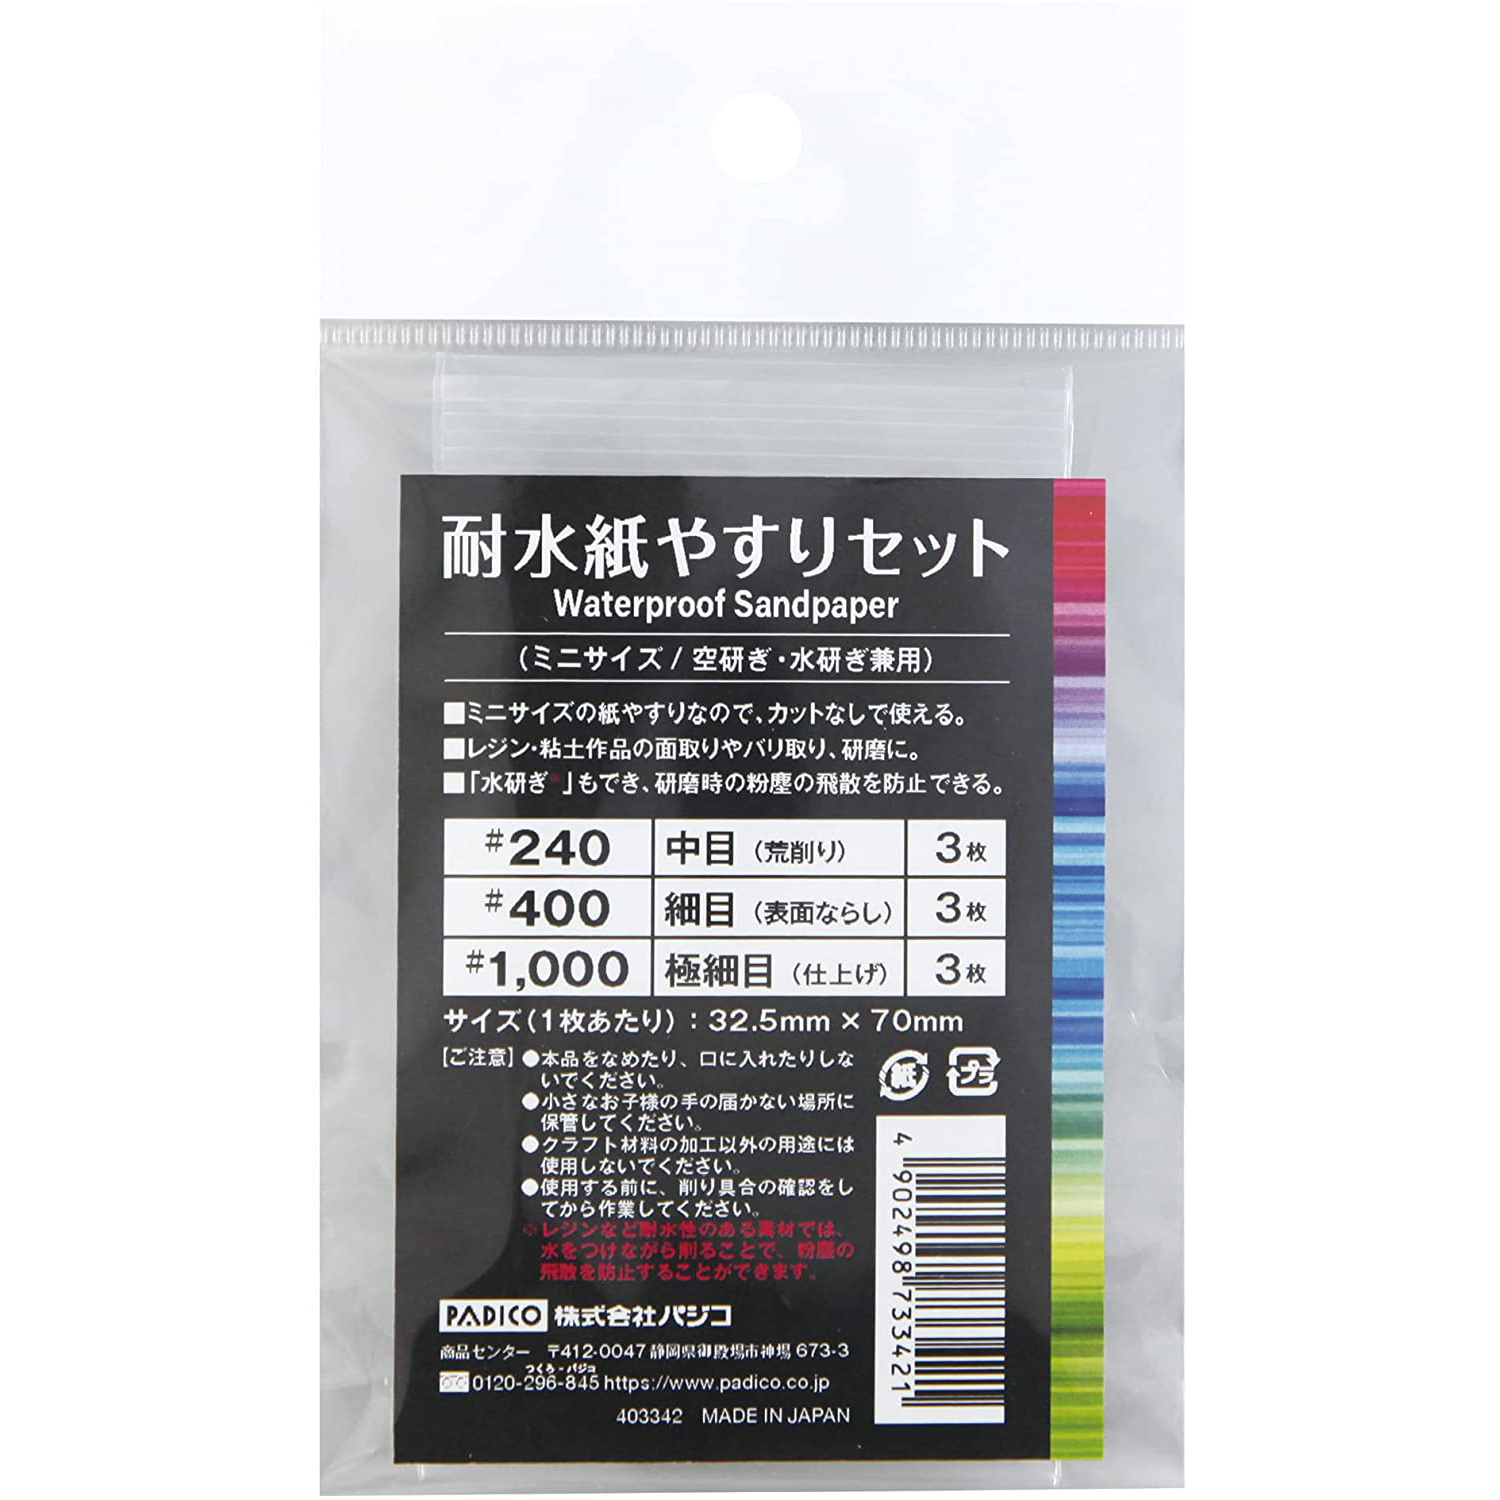 PDC403342 パジコ 耐水紙やすりセット[ミニサイズ/空研ぎ・水研ぎ兼用] (袋)